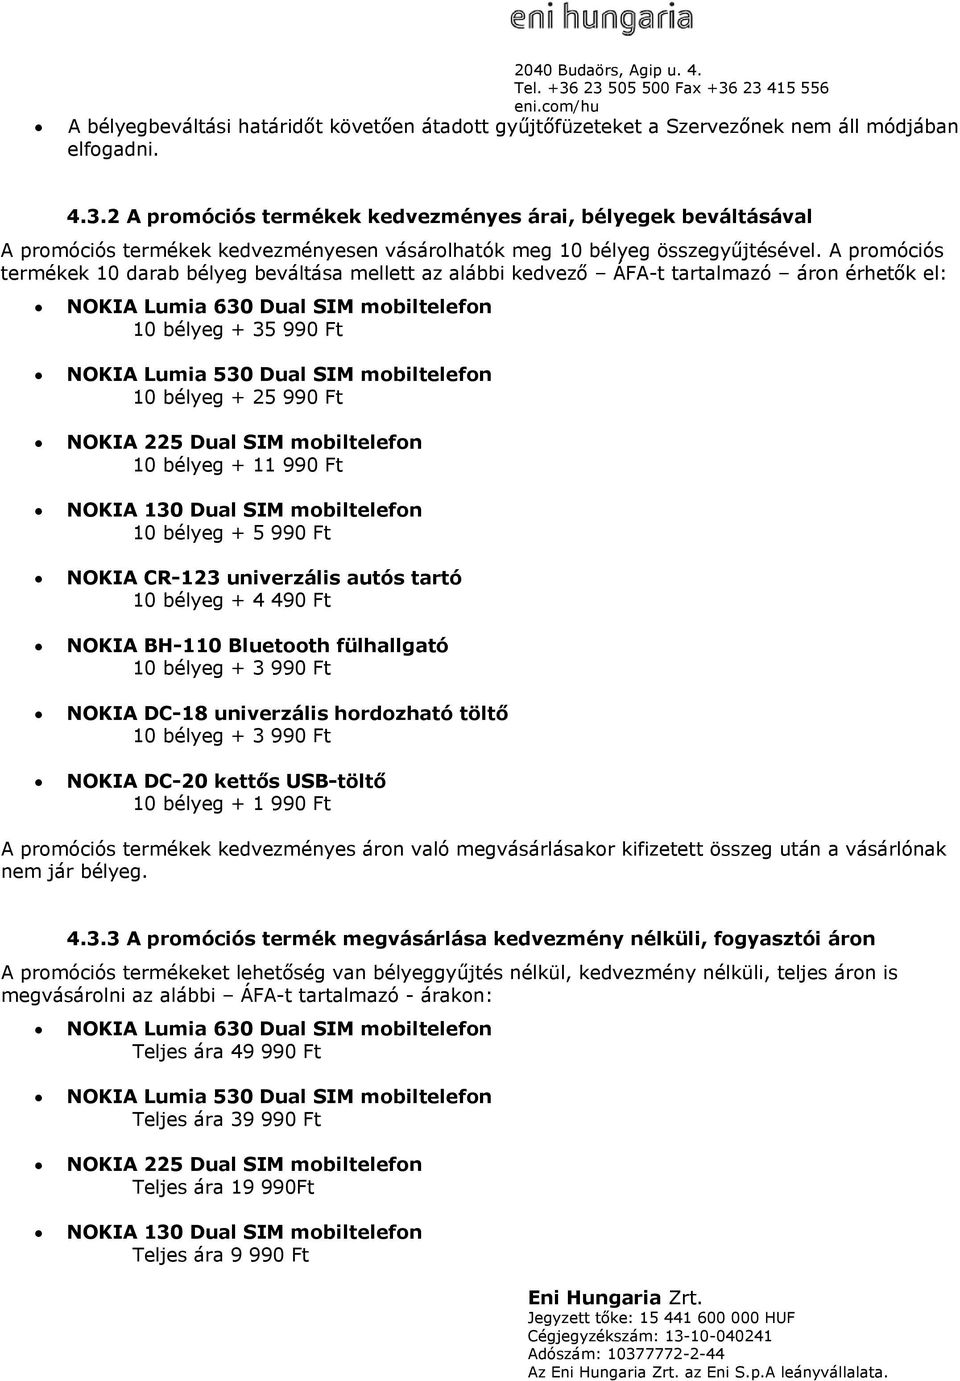 A promóciós termékek 10 darab bélyeg beváltása mellett az alábbi kedvező ÁFA-t tartalmazó áron érhetők el: NOKIA Lumia 630 Dual SIM mobiltelefon 10 bélyeg + 35 990 Ft NOKIA Lumia 530 Dual SIM